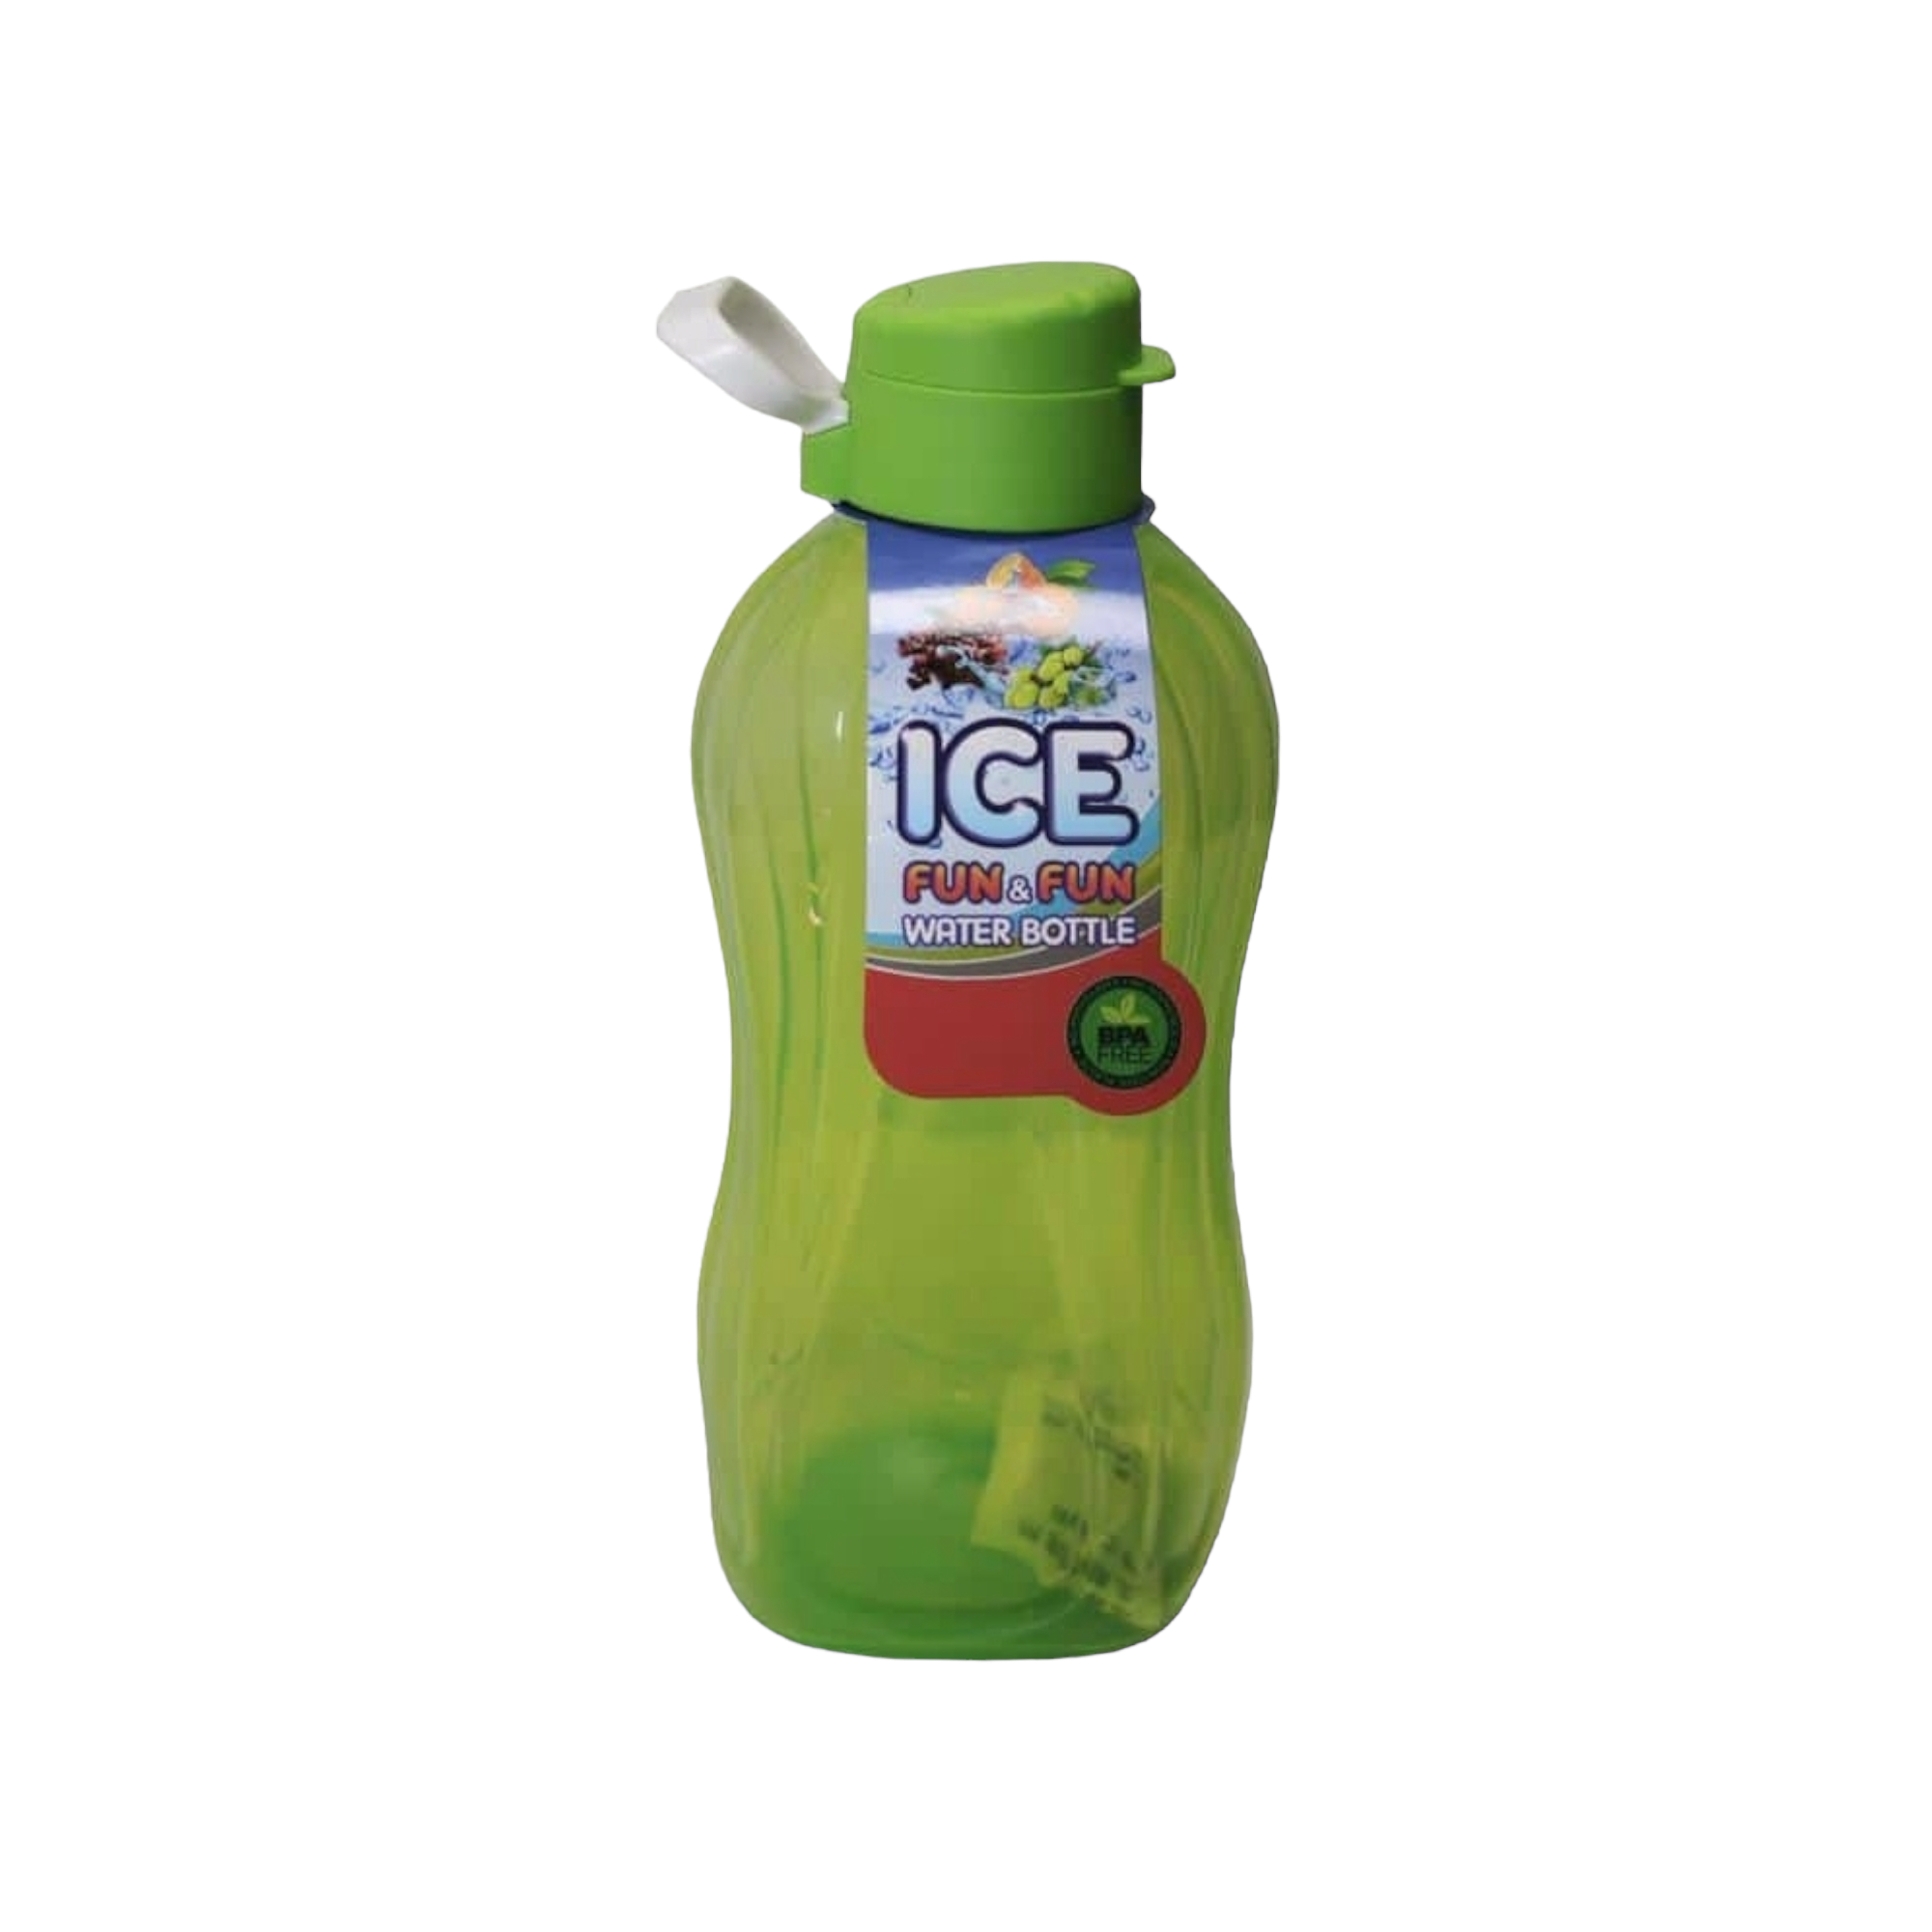 1.3L Sports Water Bottle Flip Cap Nu Ware